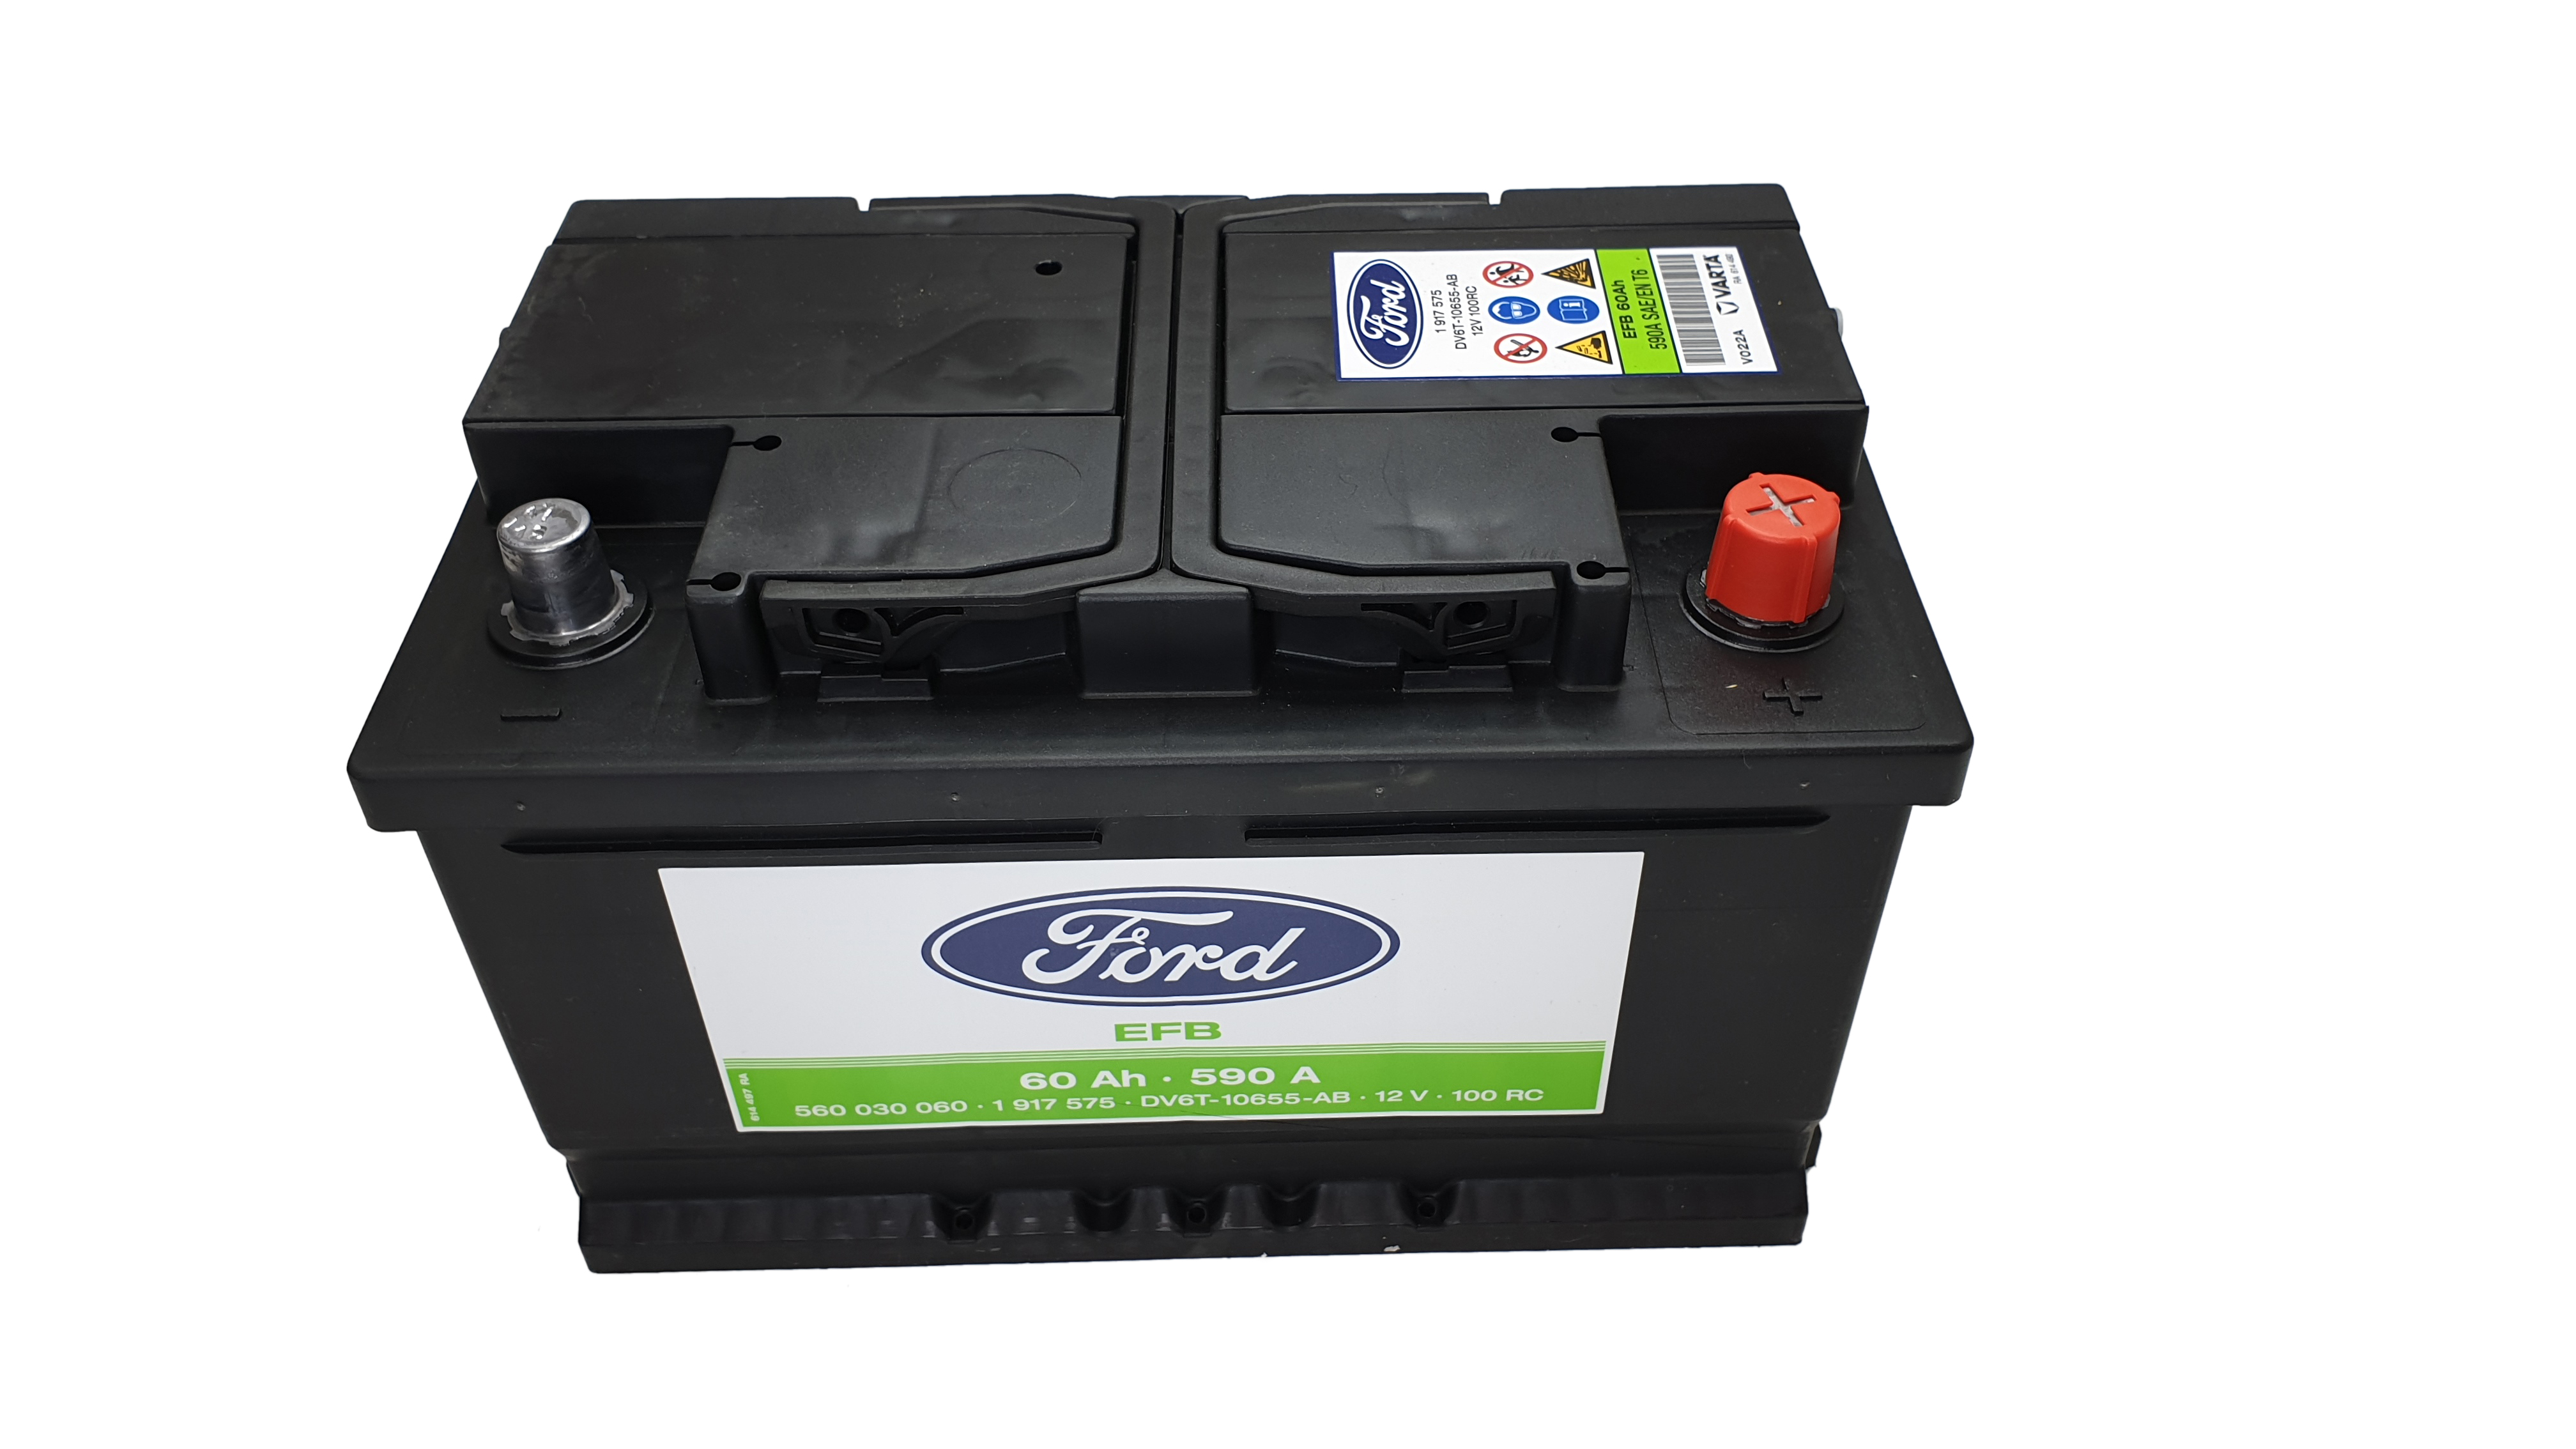 Genuine Ford battery 12V 60 AH 590 a starter battery NEW 1917575 eBay